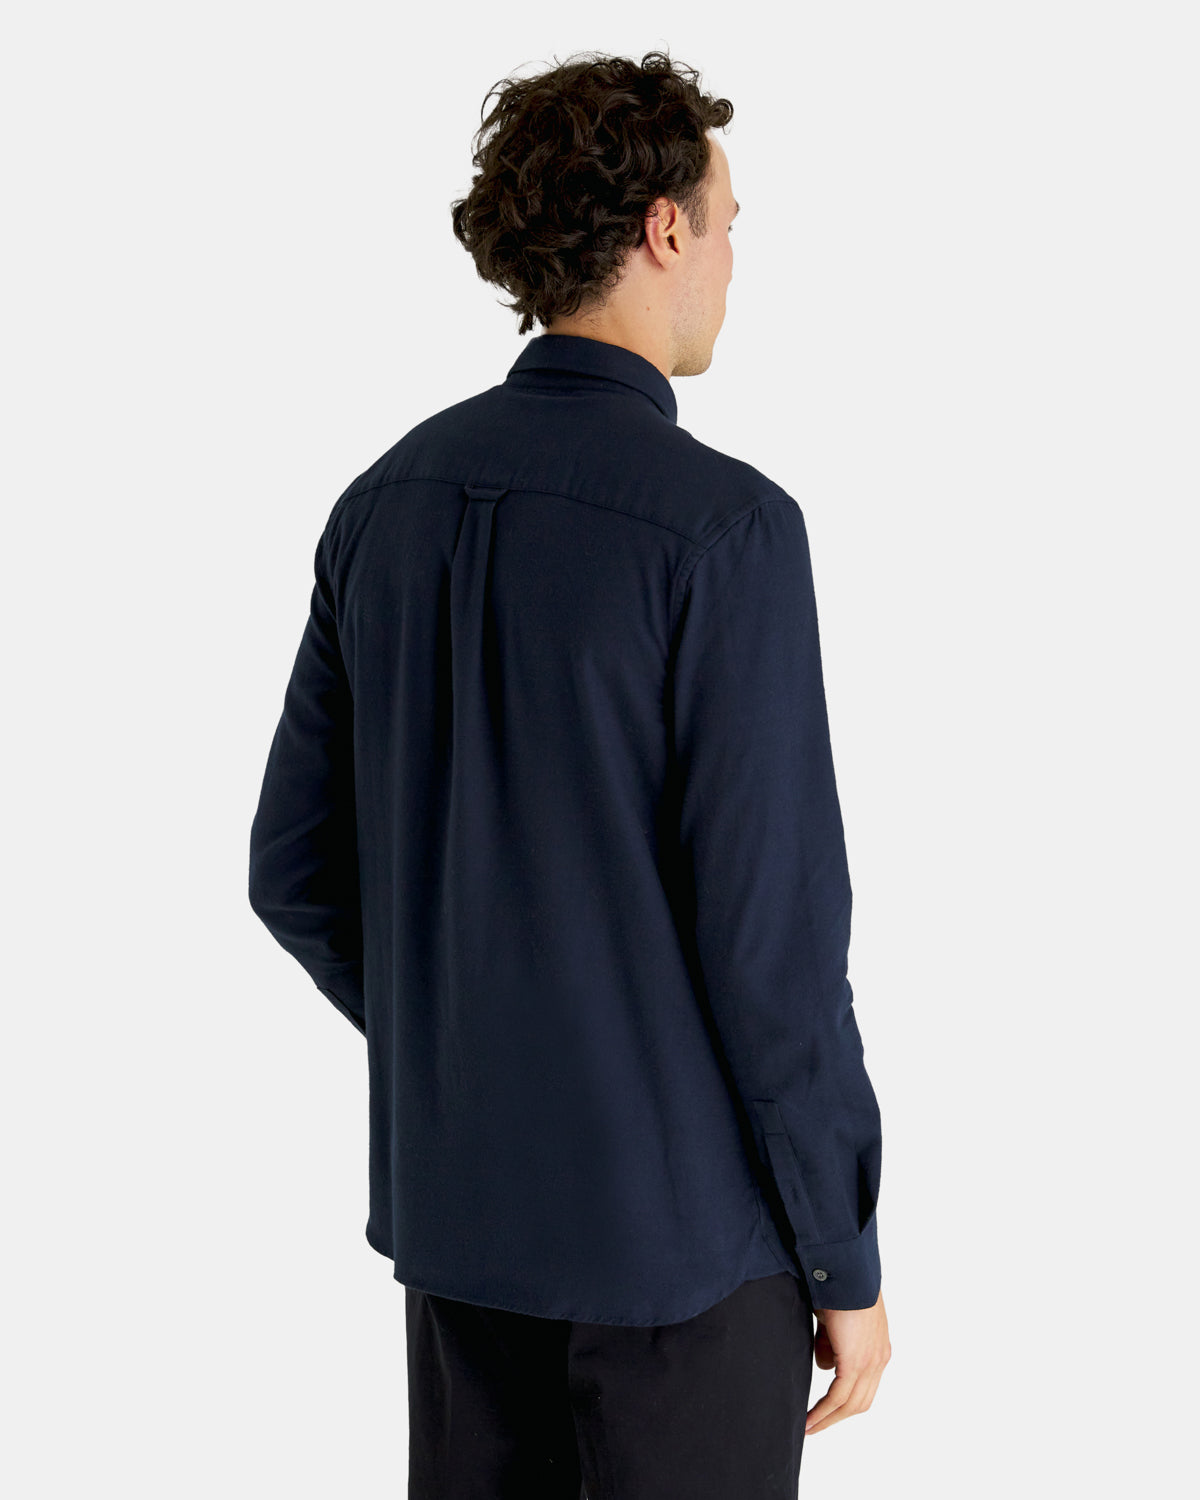 Plain flannel shirt - dark navy